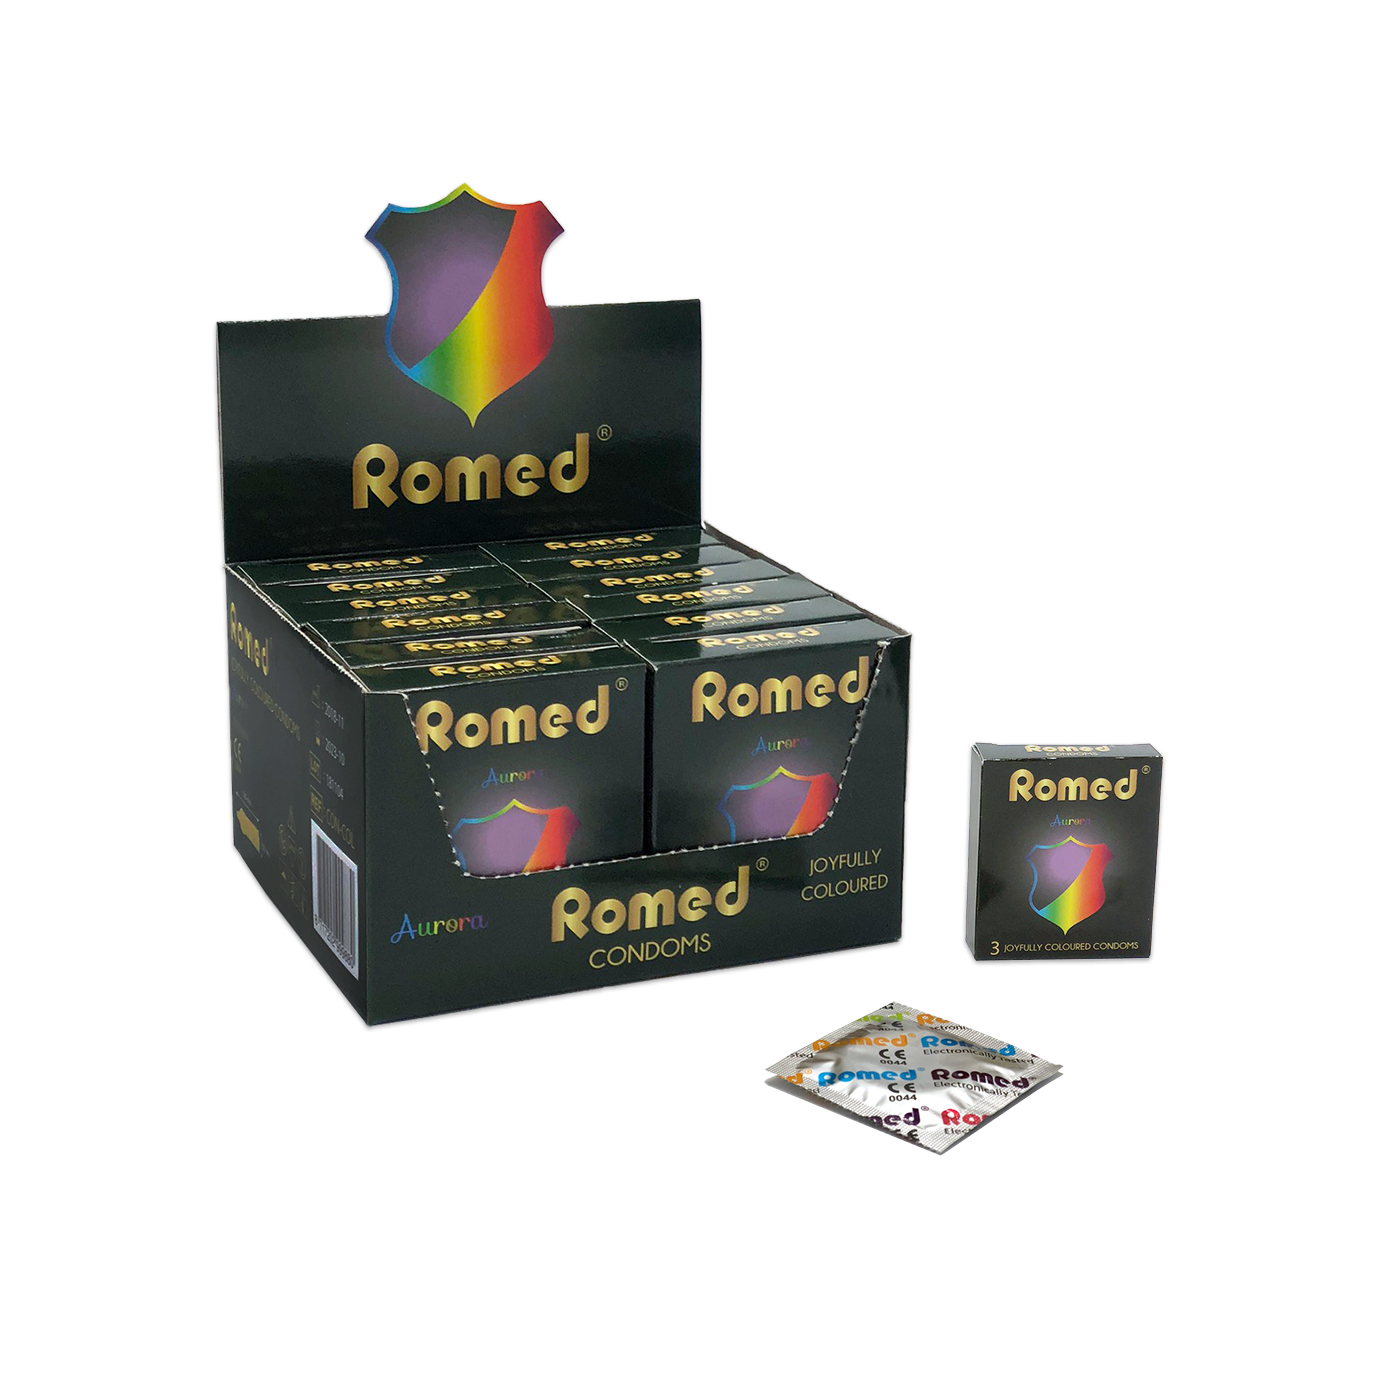 CON-COL Romed Kondome gefärbt , Streifen zu 3 Stück in einem Päckchen, in Cellophan, 48 Päckchen = 144 Stück in einer Schachtel, (= 1 Gros) 30 x 144 Stück = 4.320 Stück im Karton.